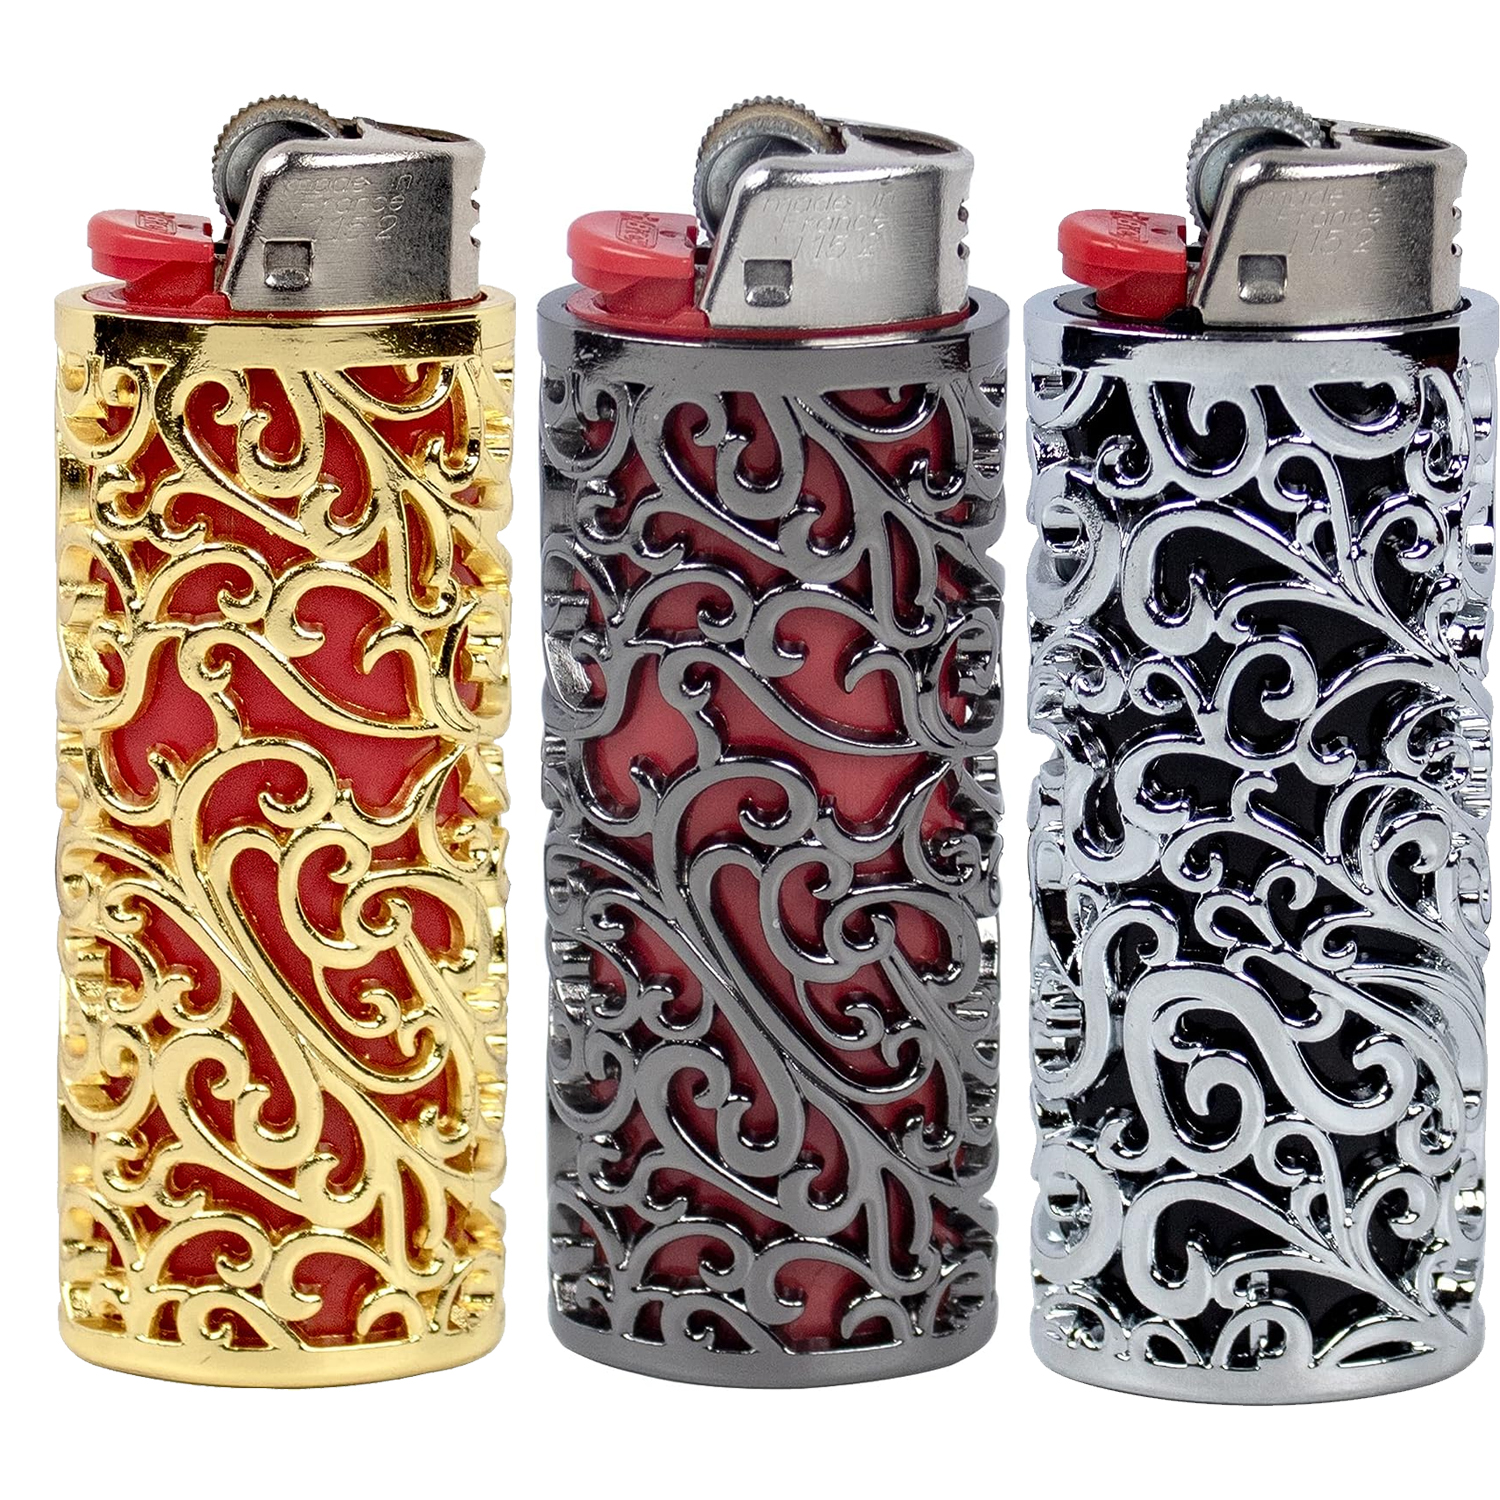 Designer Lighter Sleeve Case With Lighter